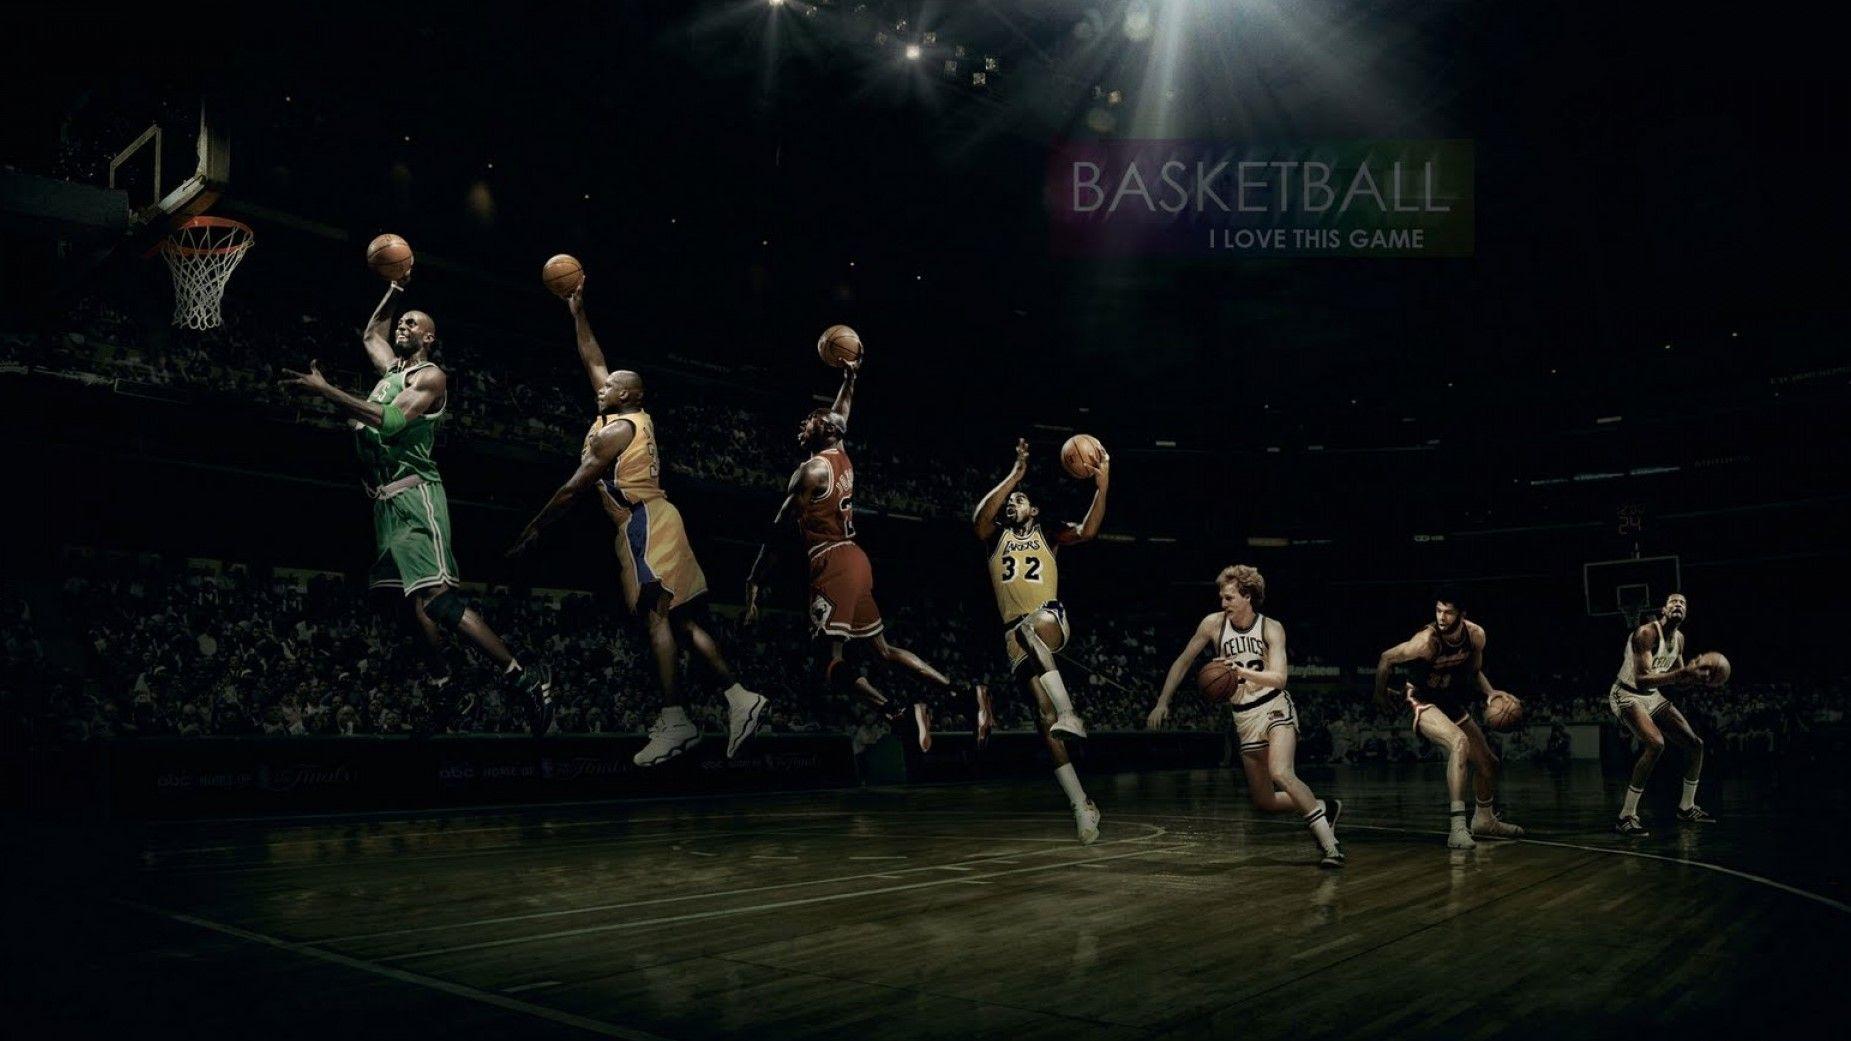 Best Basketball HD Wallpaper NBA 1080p Desktop Background